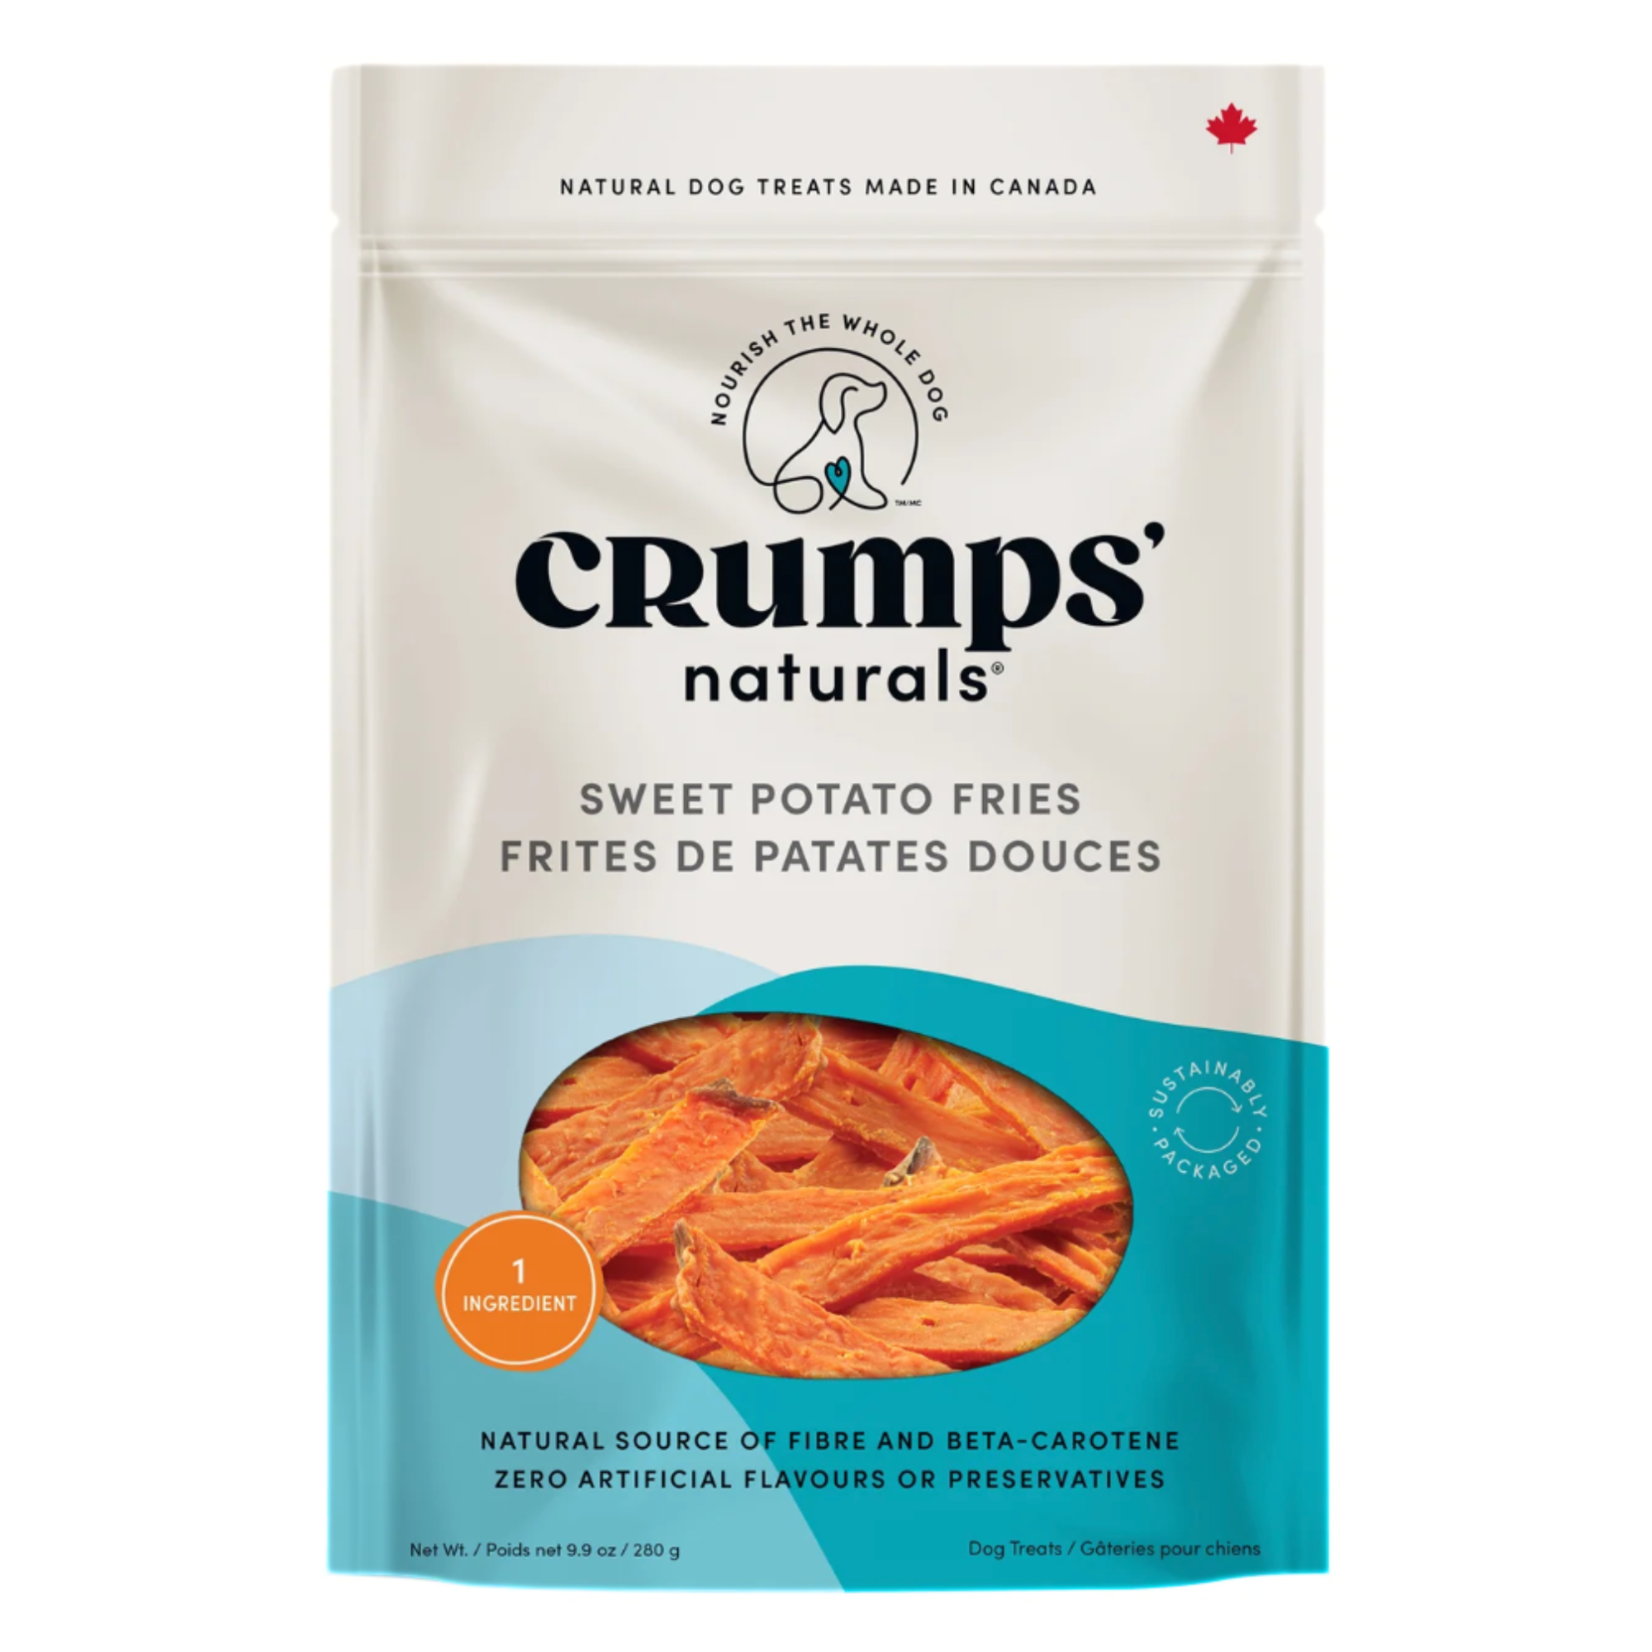 Crumps' Naturals Crumps’: Sweet Potato Fries